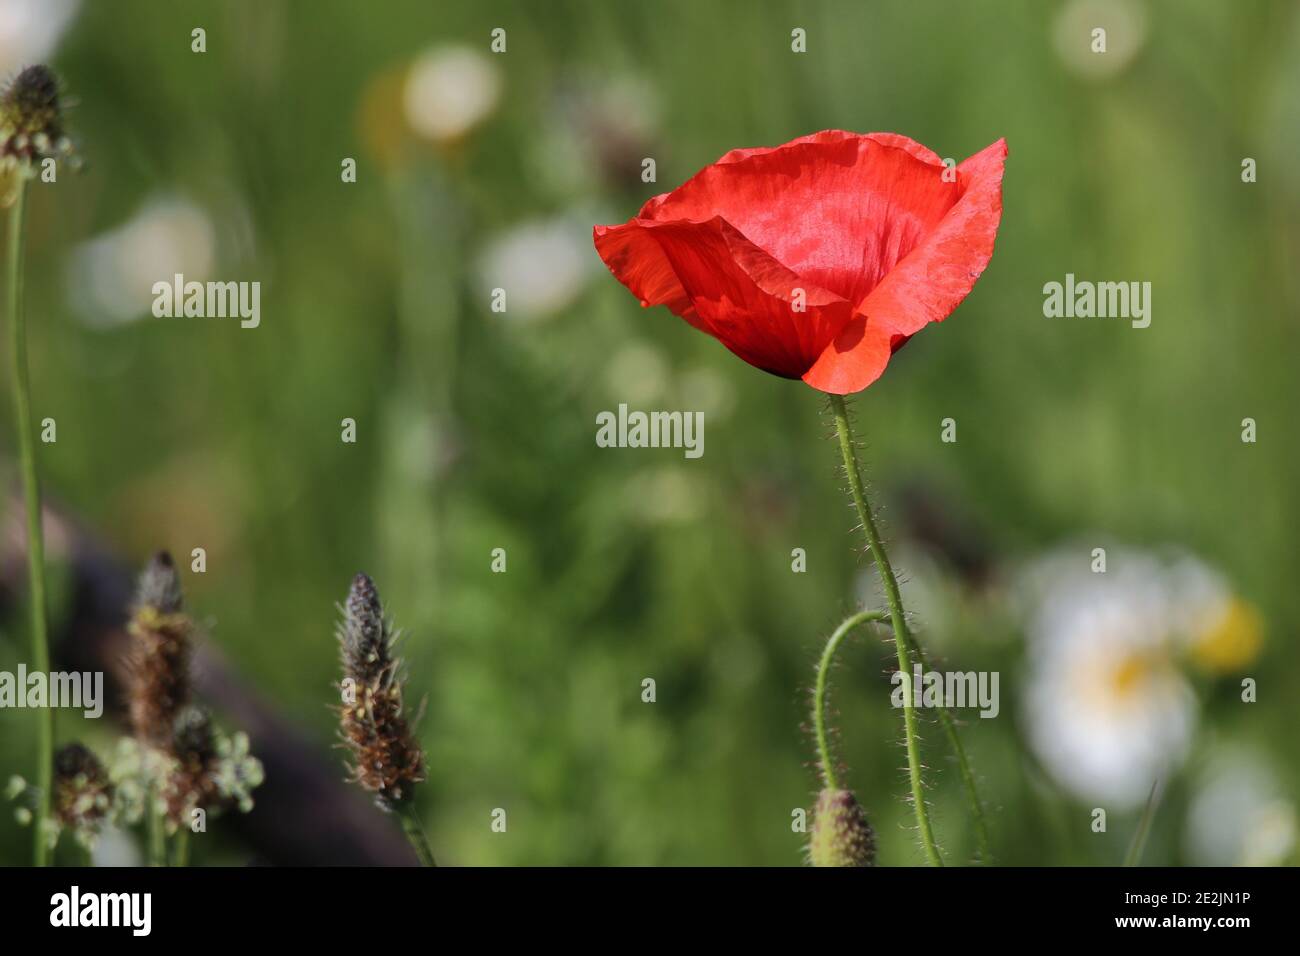 primer plano de una flor de amapola roja en flor Foto de stock